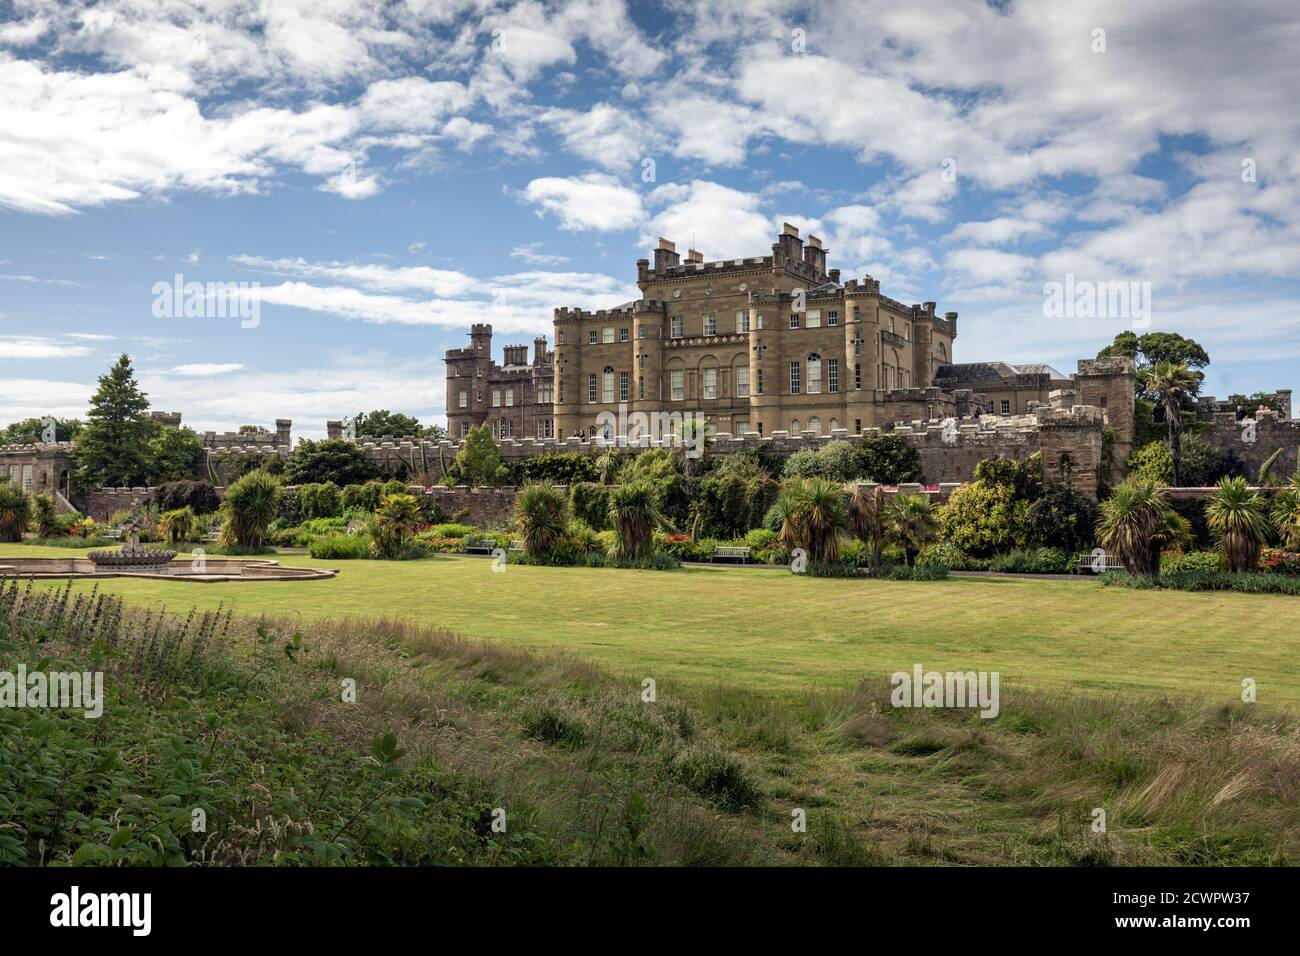 Le Château de Culzean et Country Park dans l'Ayrshire, Ecosse Banque D'Images